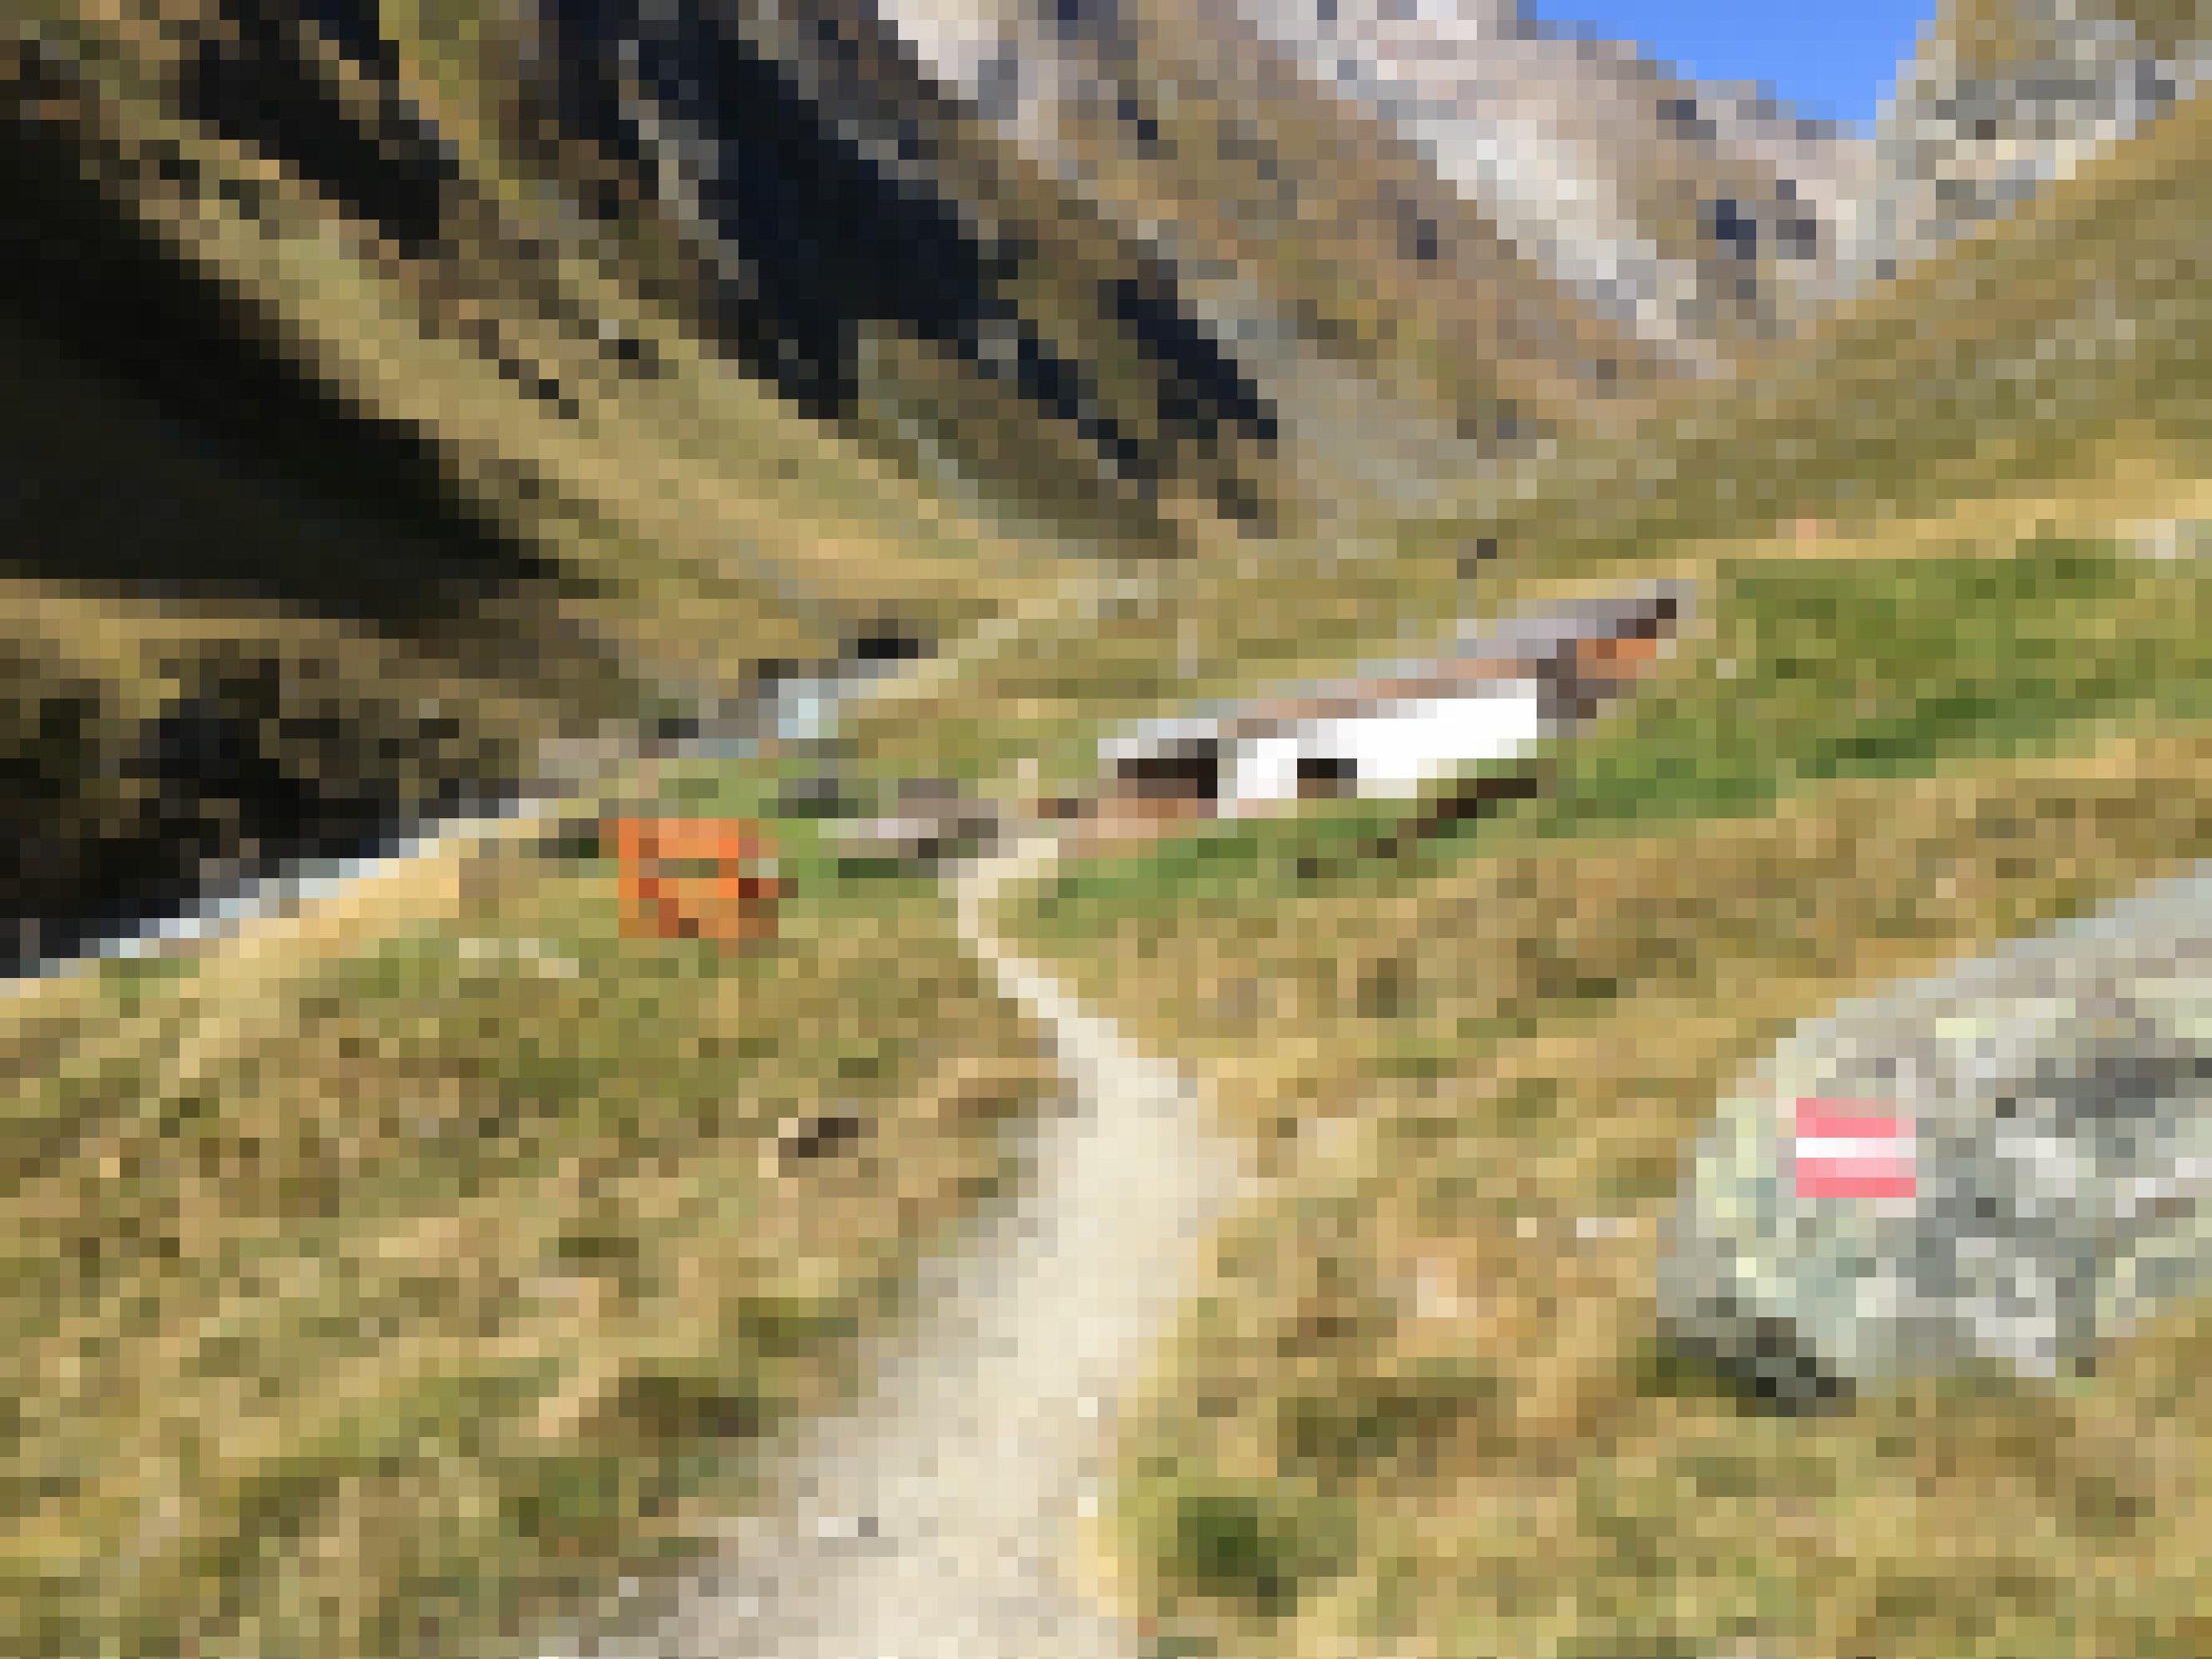 alpines Tal mit Schutzhütte und Bänken davor